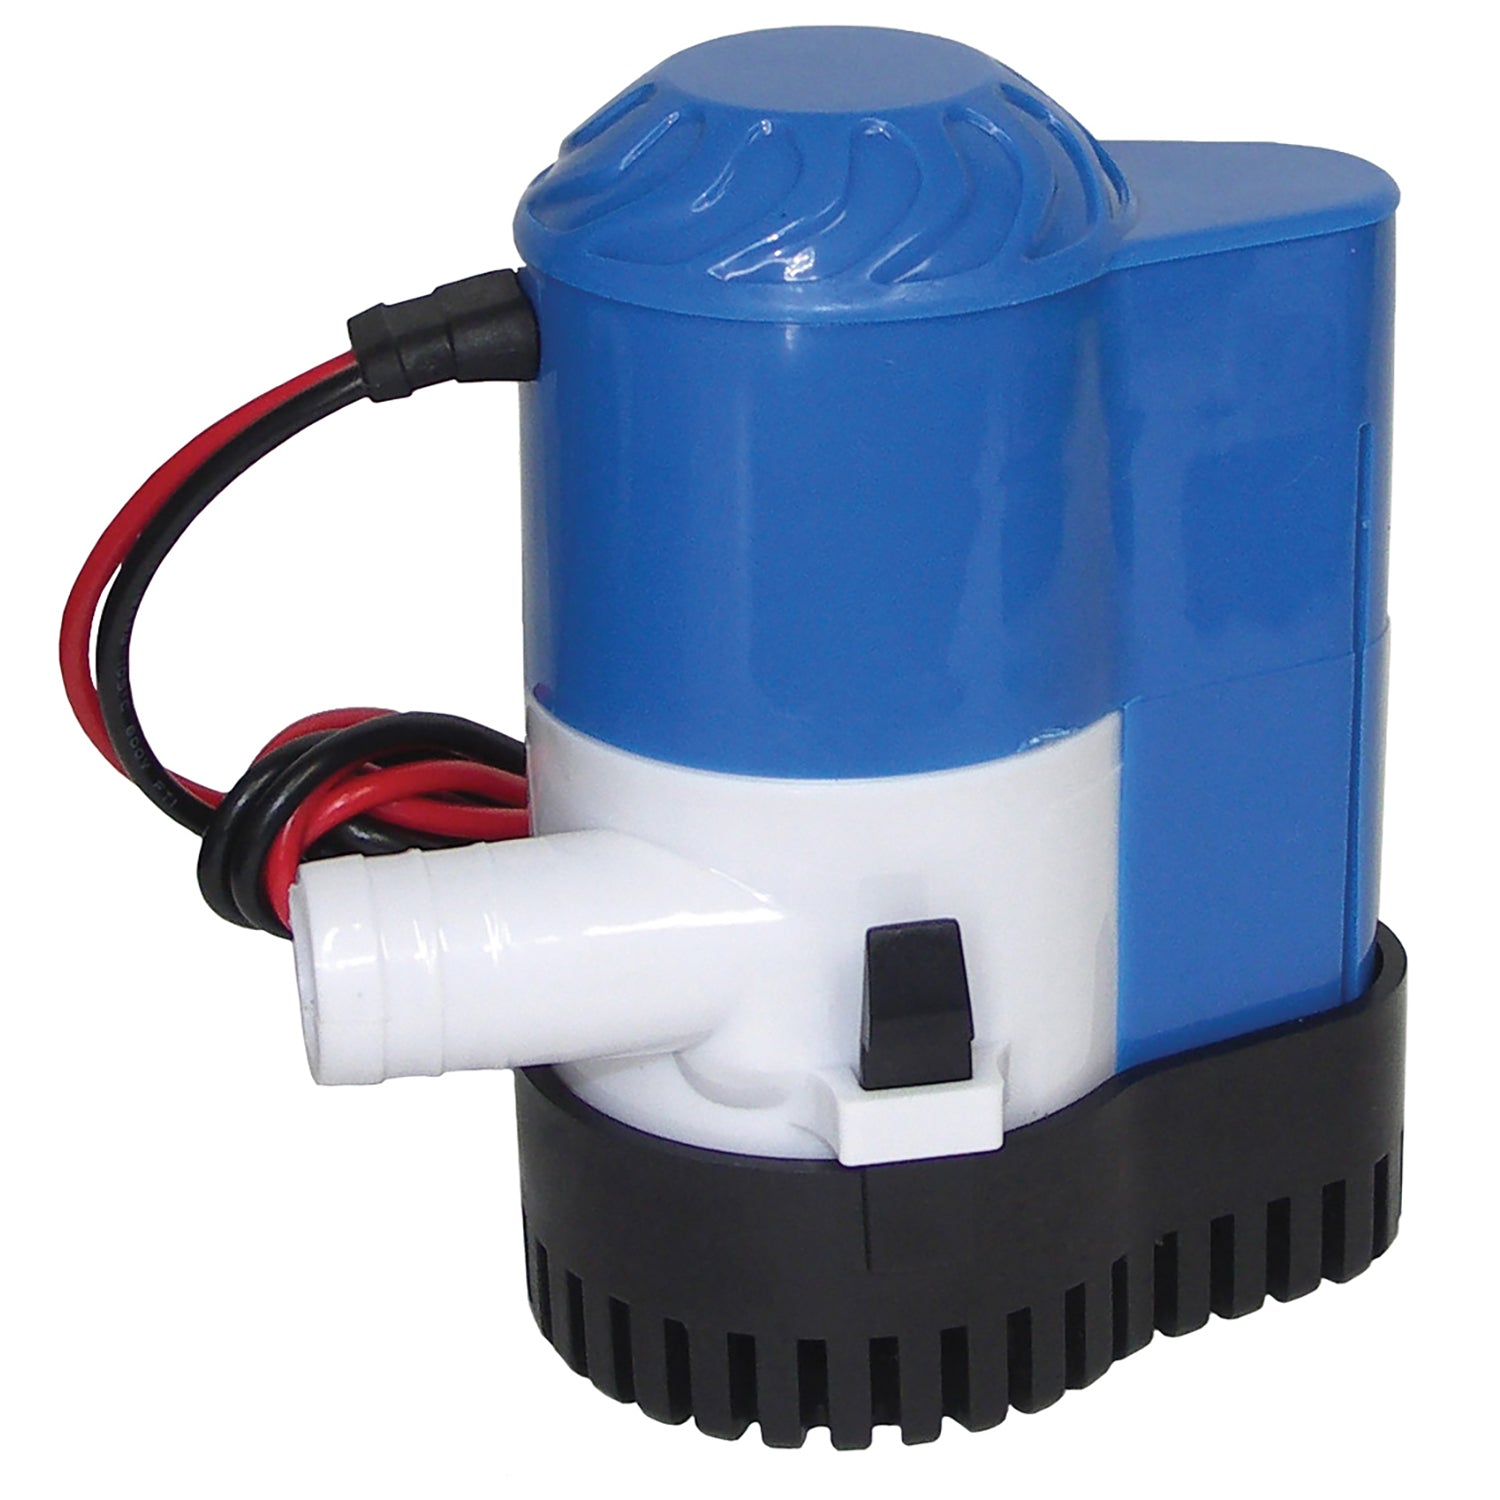 Aerator Cooler Pump Kit